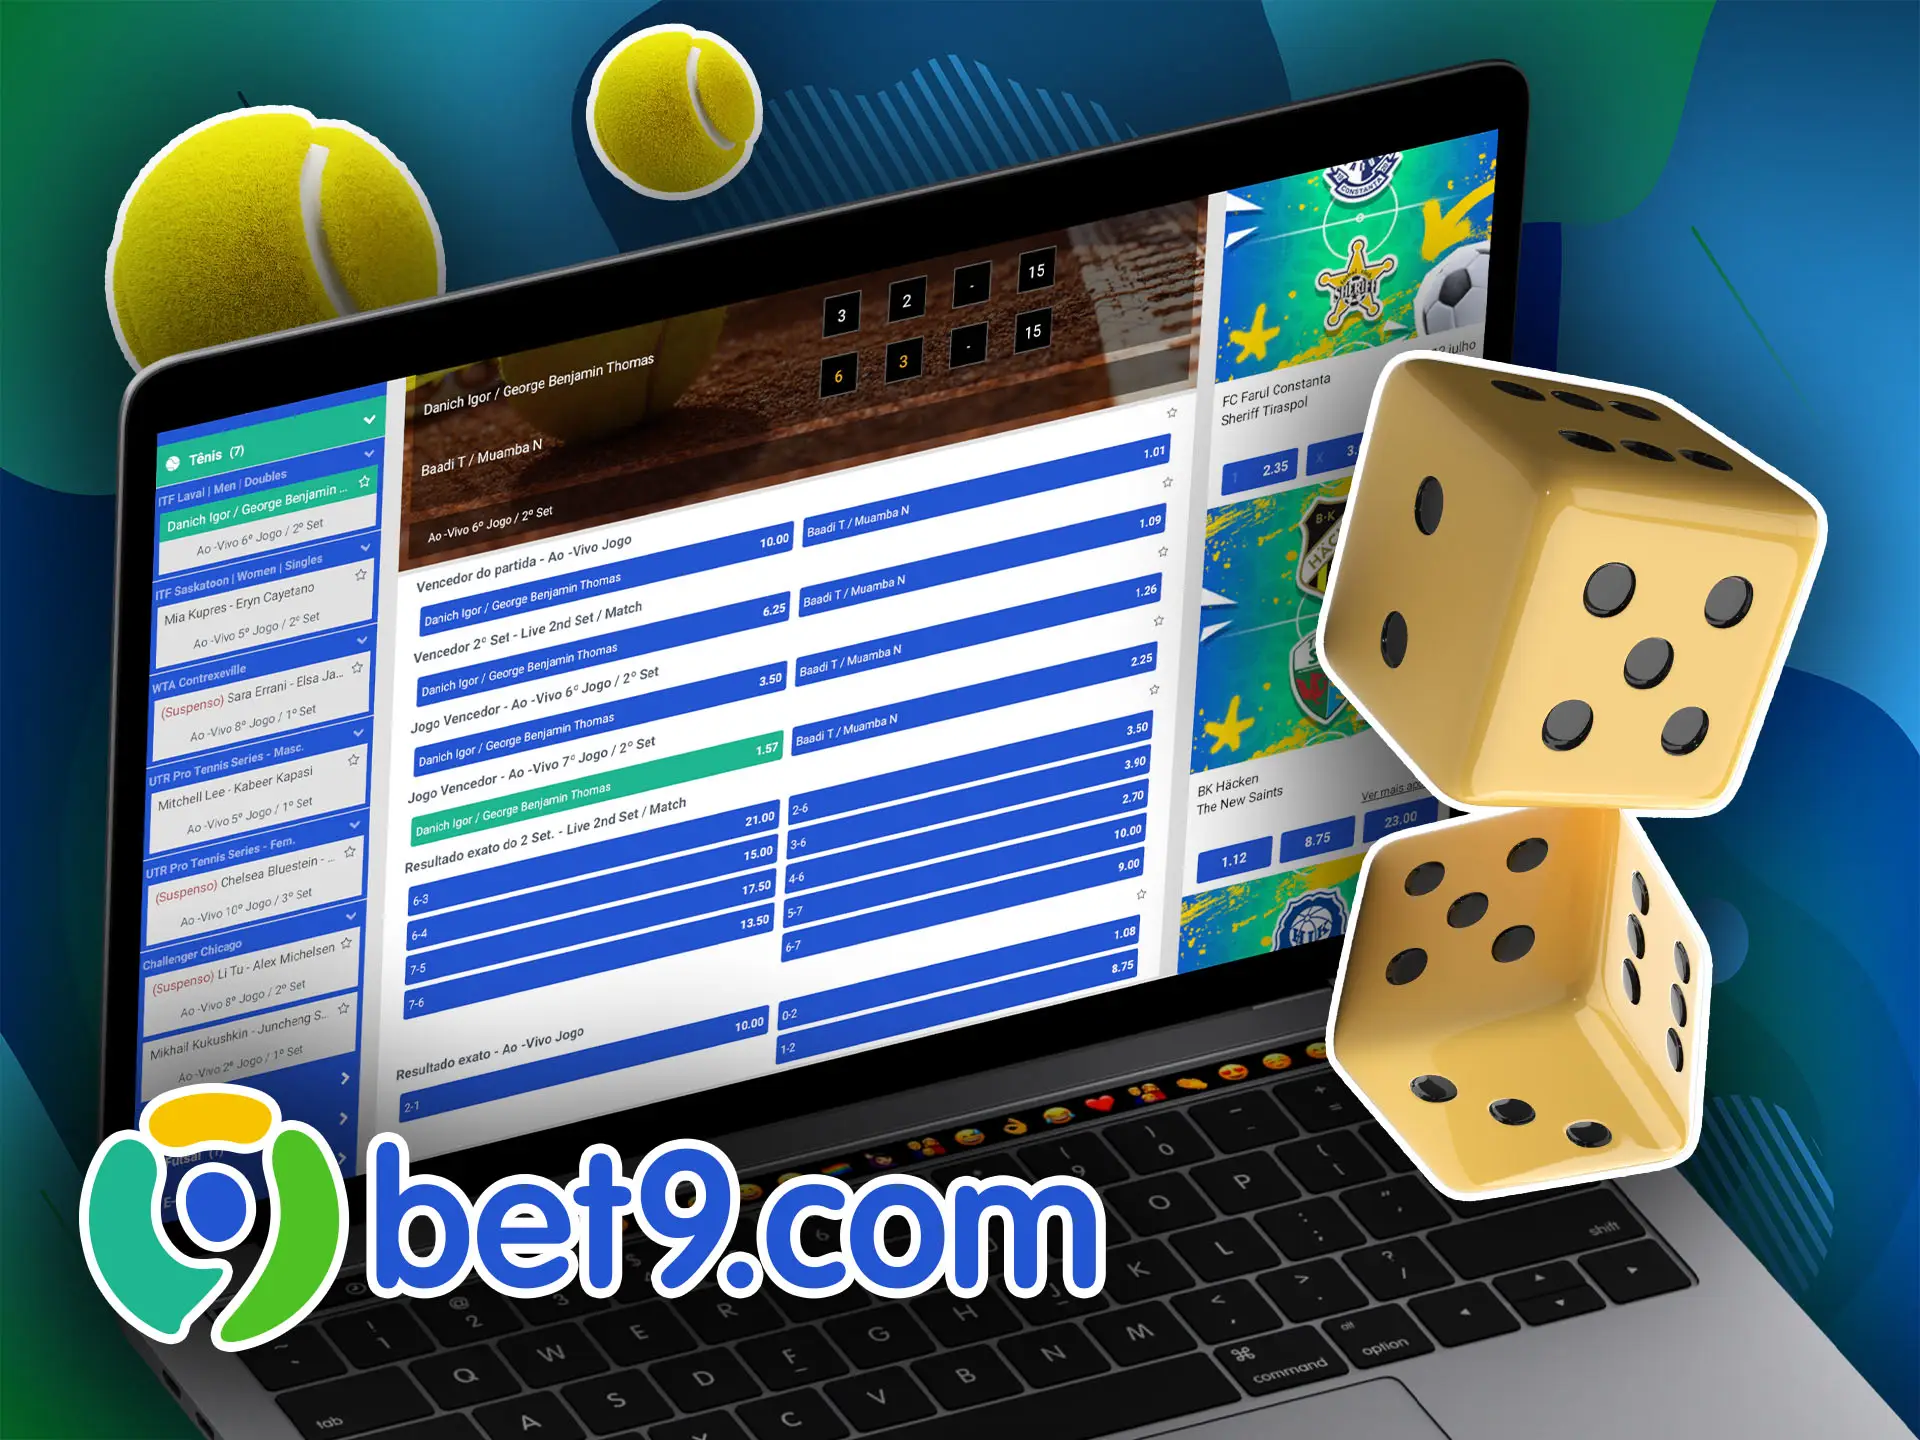 Use nossa fórmula para calcular corretamente a probabilidade de ganhar uma aposta Bet9.